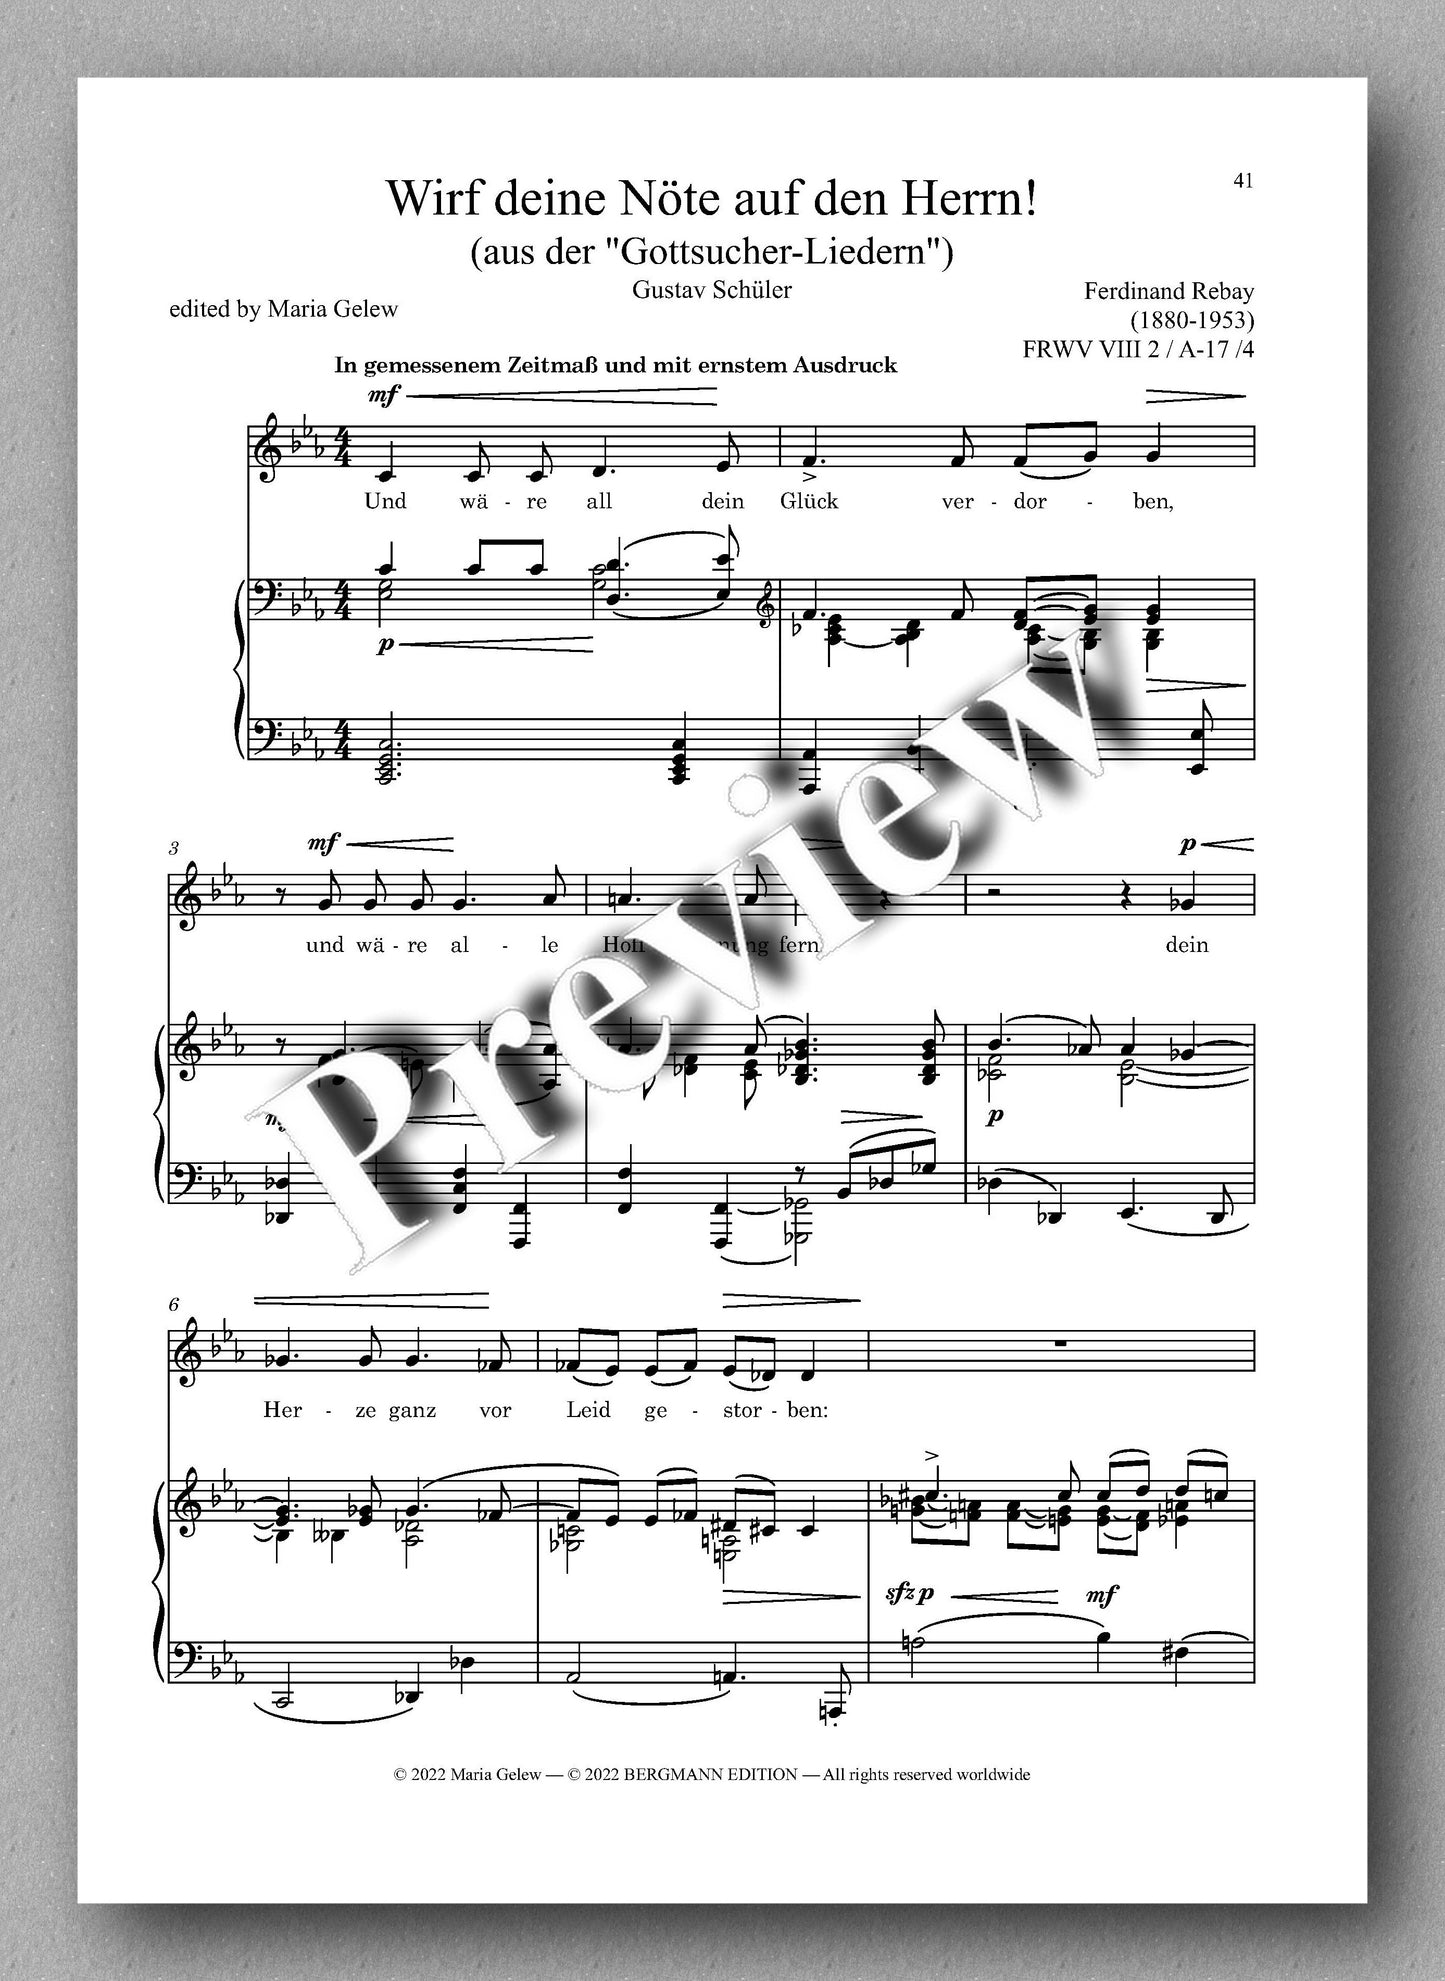 Ferdinand Rebay, Lieder nach Gedichten von Wolfgang Madjera und Gustav Schüler - preview of the music score 4